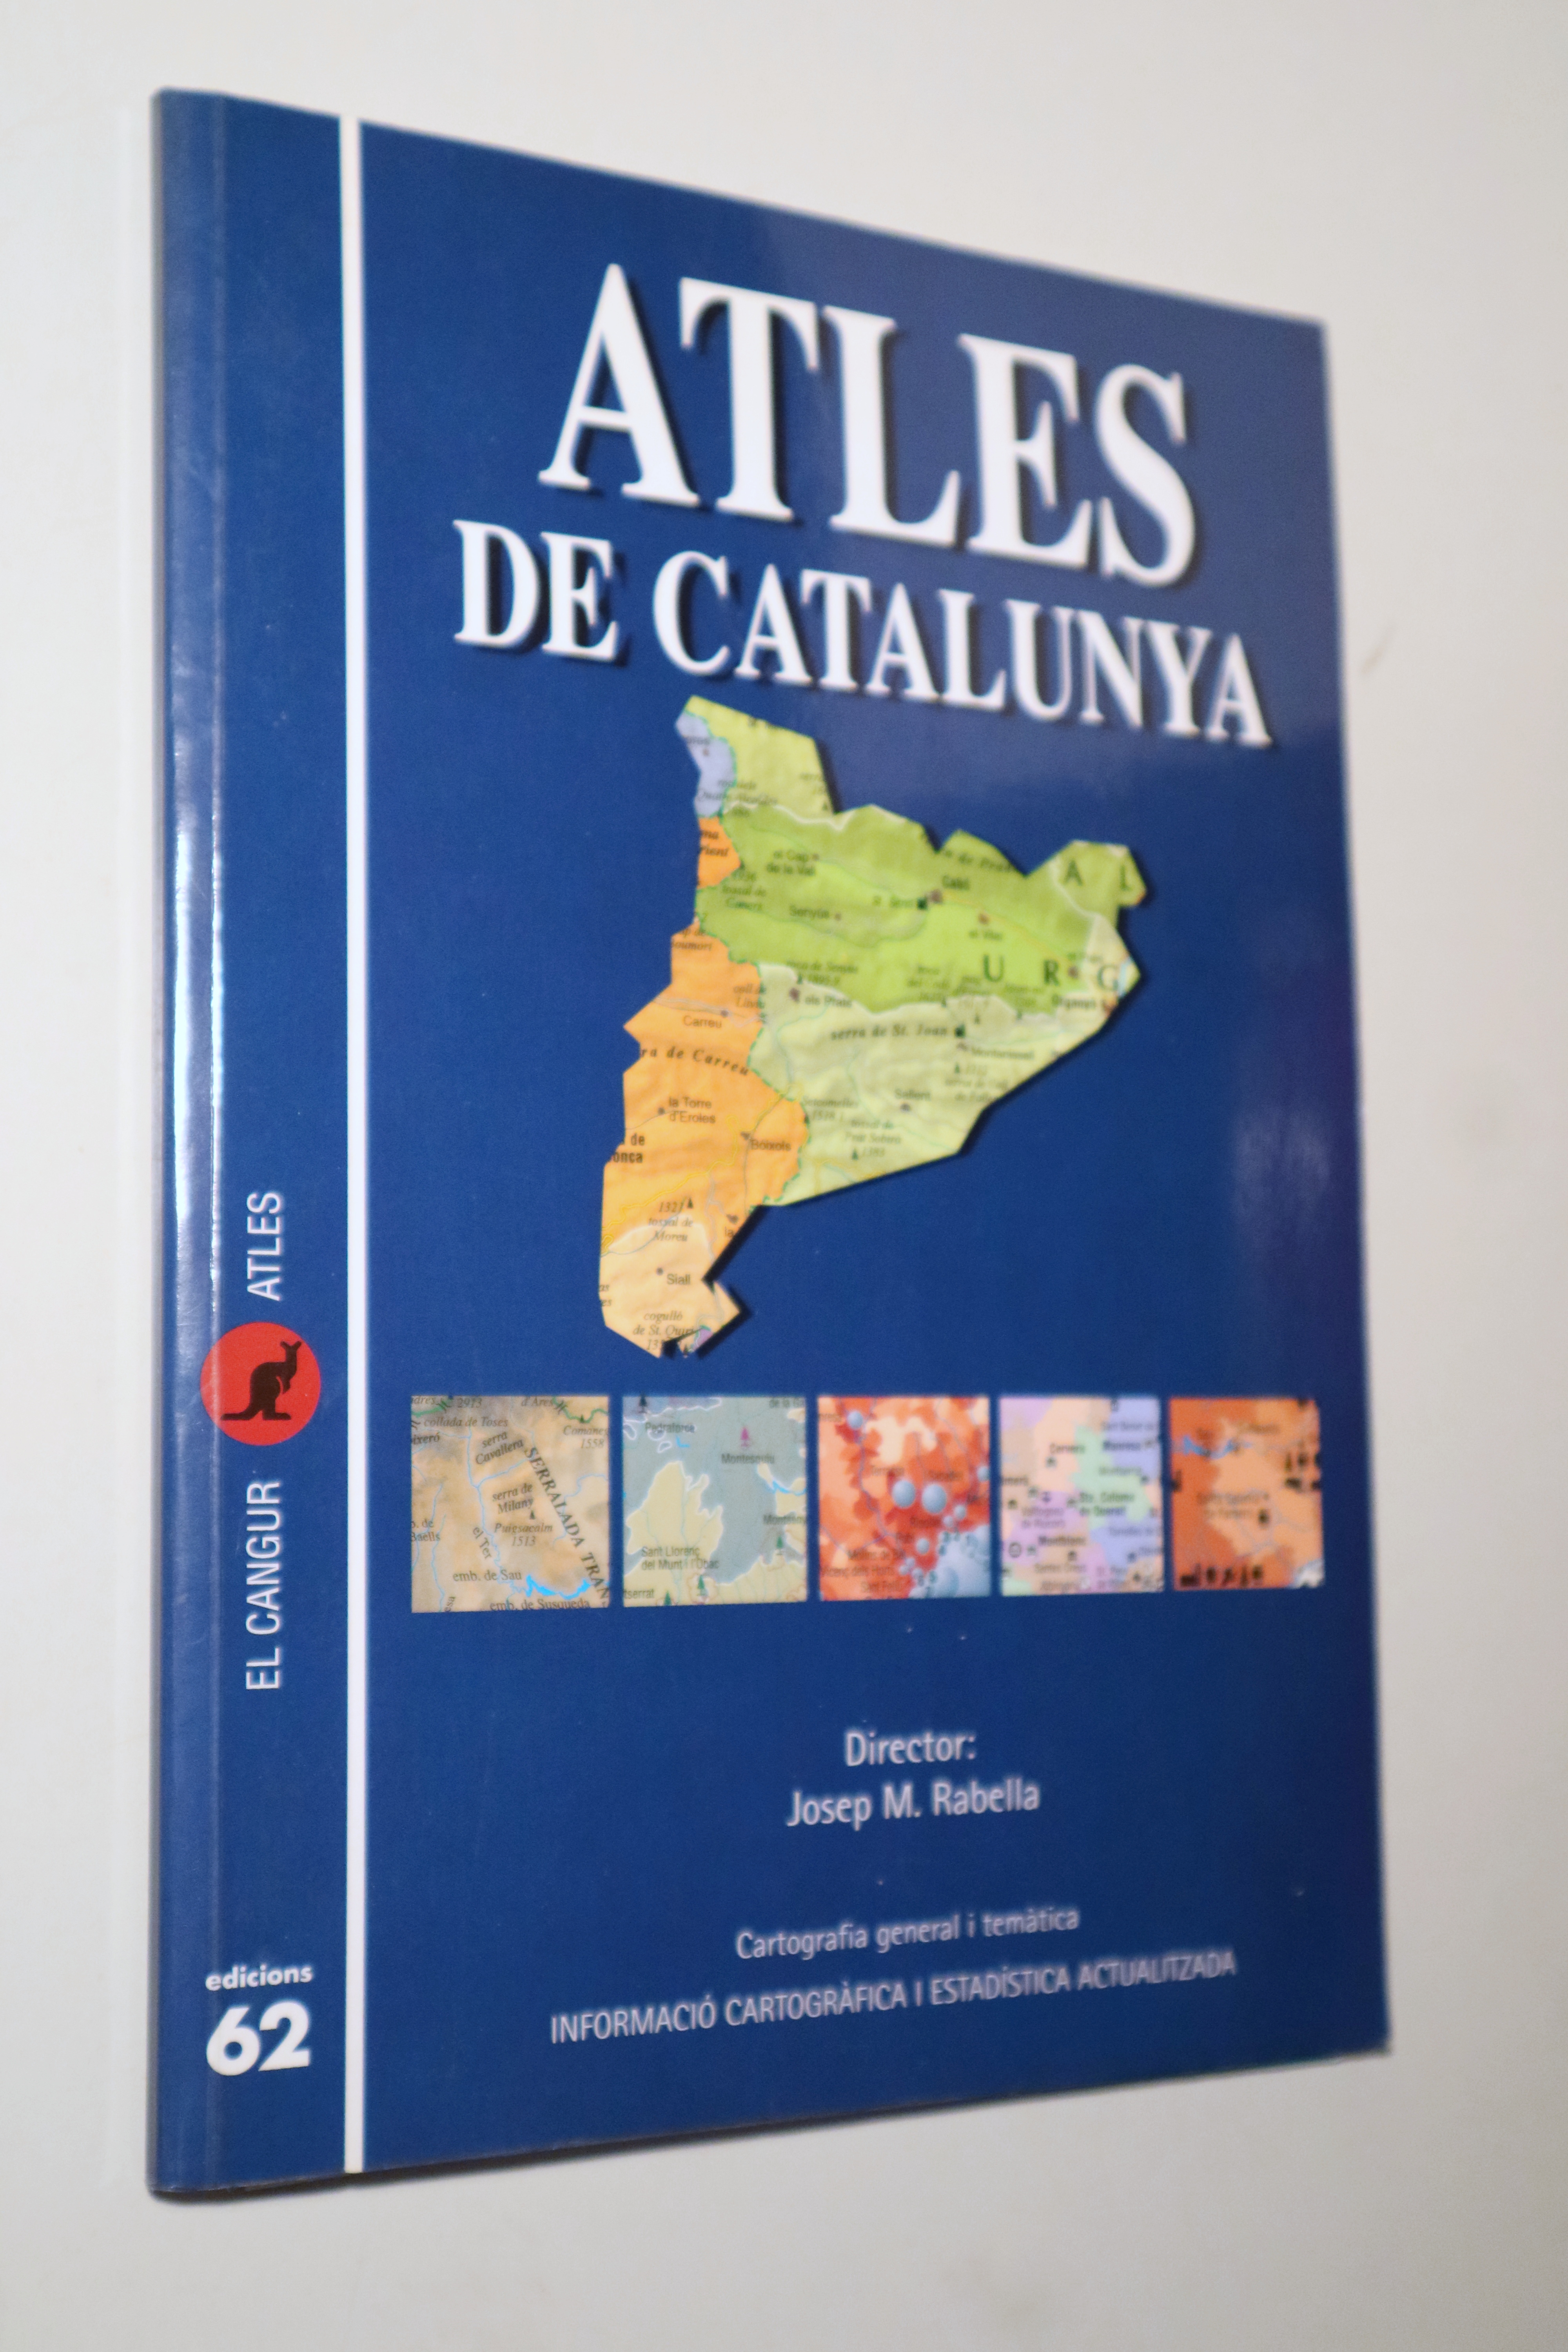 ATLES DE CATALUNYA - Barcelona 1997 - Molt il·lustrat